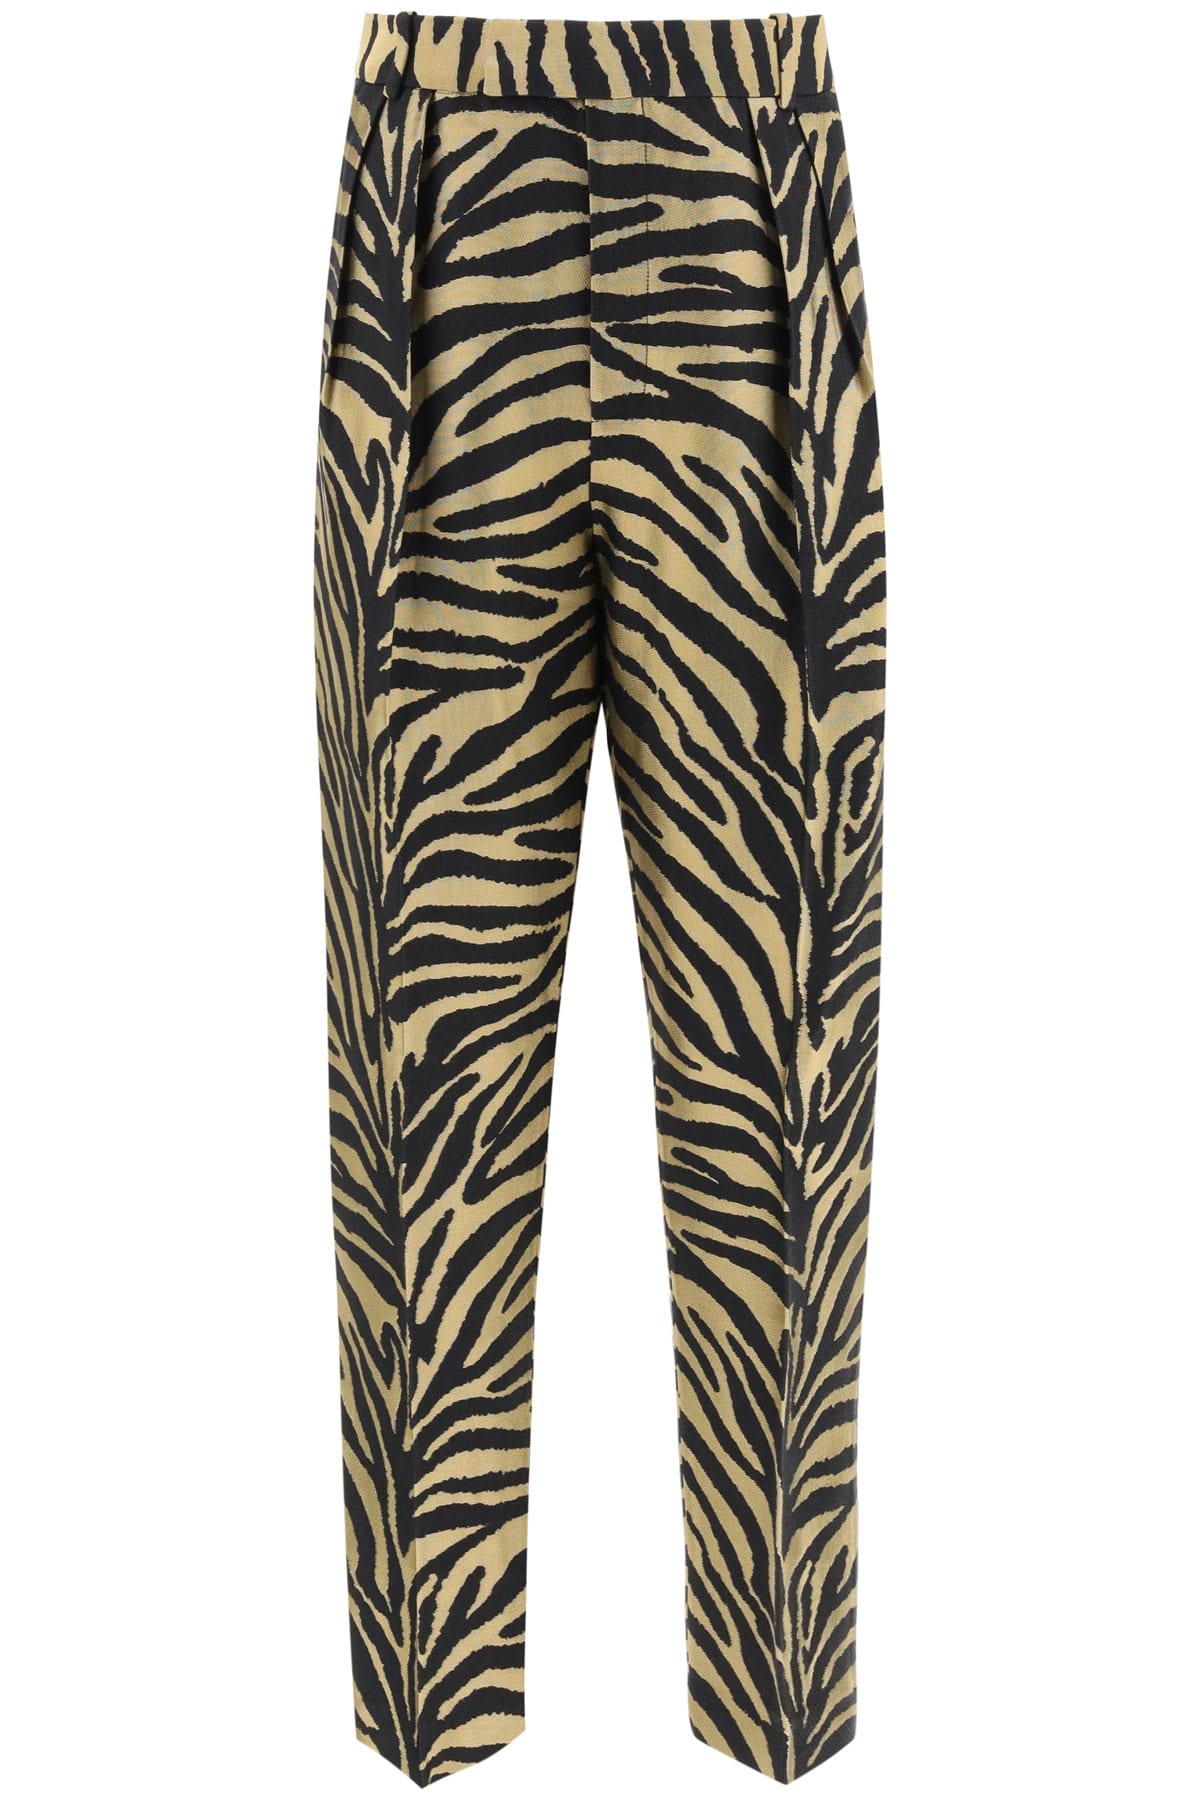 Khaite Magdeline Zebra Print Trousers